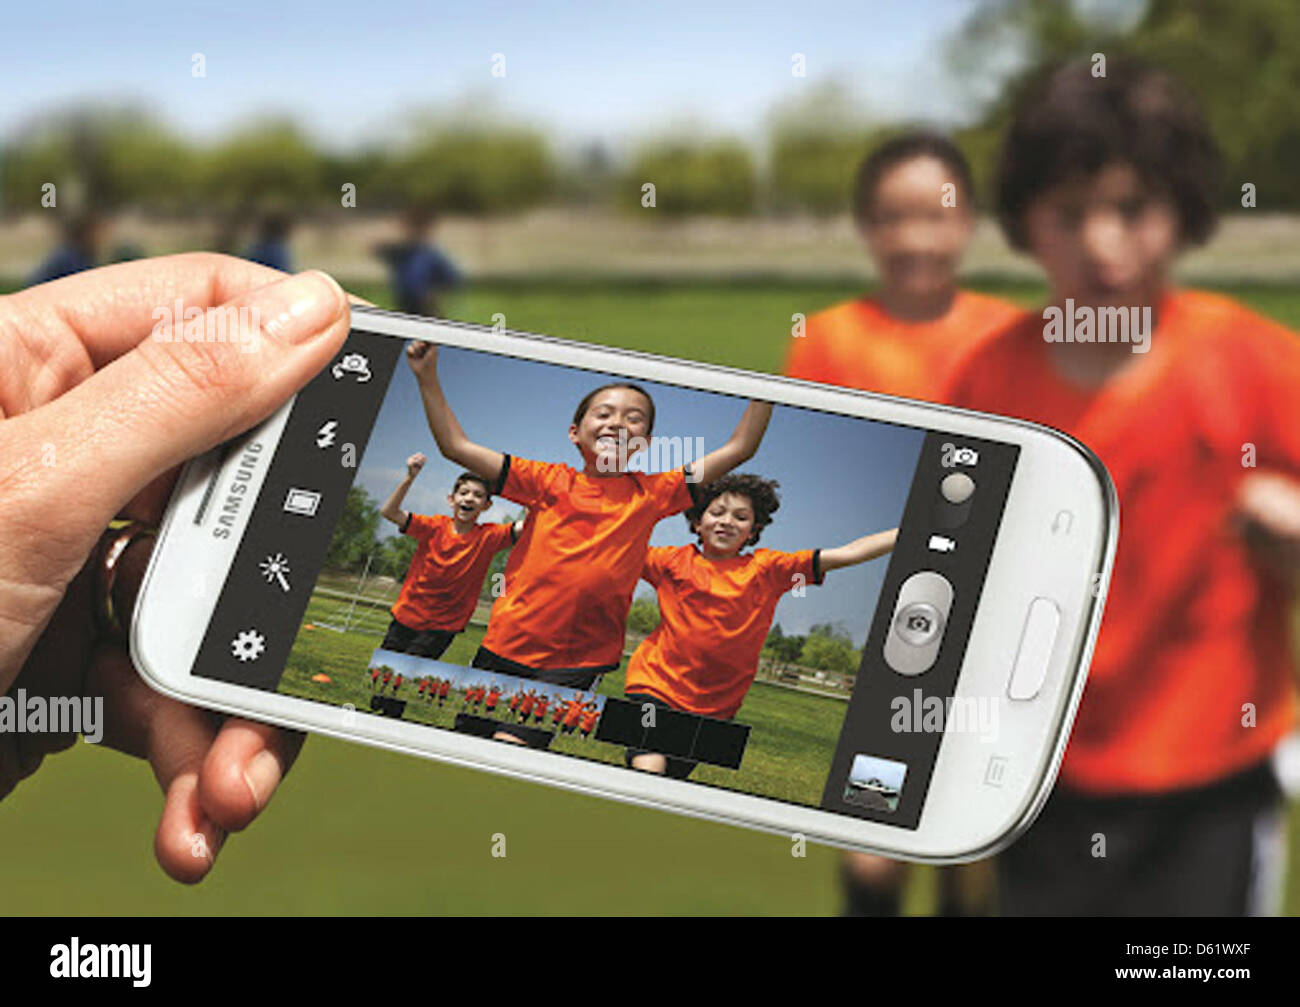 HANDOUT - Samsung schickt eine neue Generation seines Spitzen-Smartphones auf iPhone-Jagd. Das am Donnerstag (03.05.2012) vorgestellte Galaxy S3 (Samsung-Handout) hat einen großen Bildschirm mit einer Diagonale von 4,8 Zoll (12,2 cm) und unterstützt zumindest in einigen Ländern den schnellen LTE-Datenfunk, wie Samsung am Donnerstagabend mitteilte. Die Hauptkamera hat eine Auflösung Stock Photo